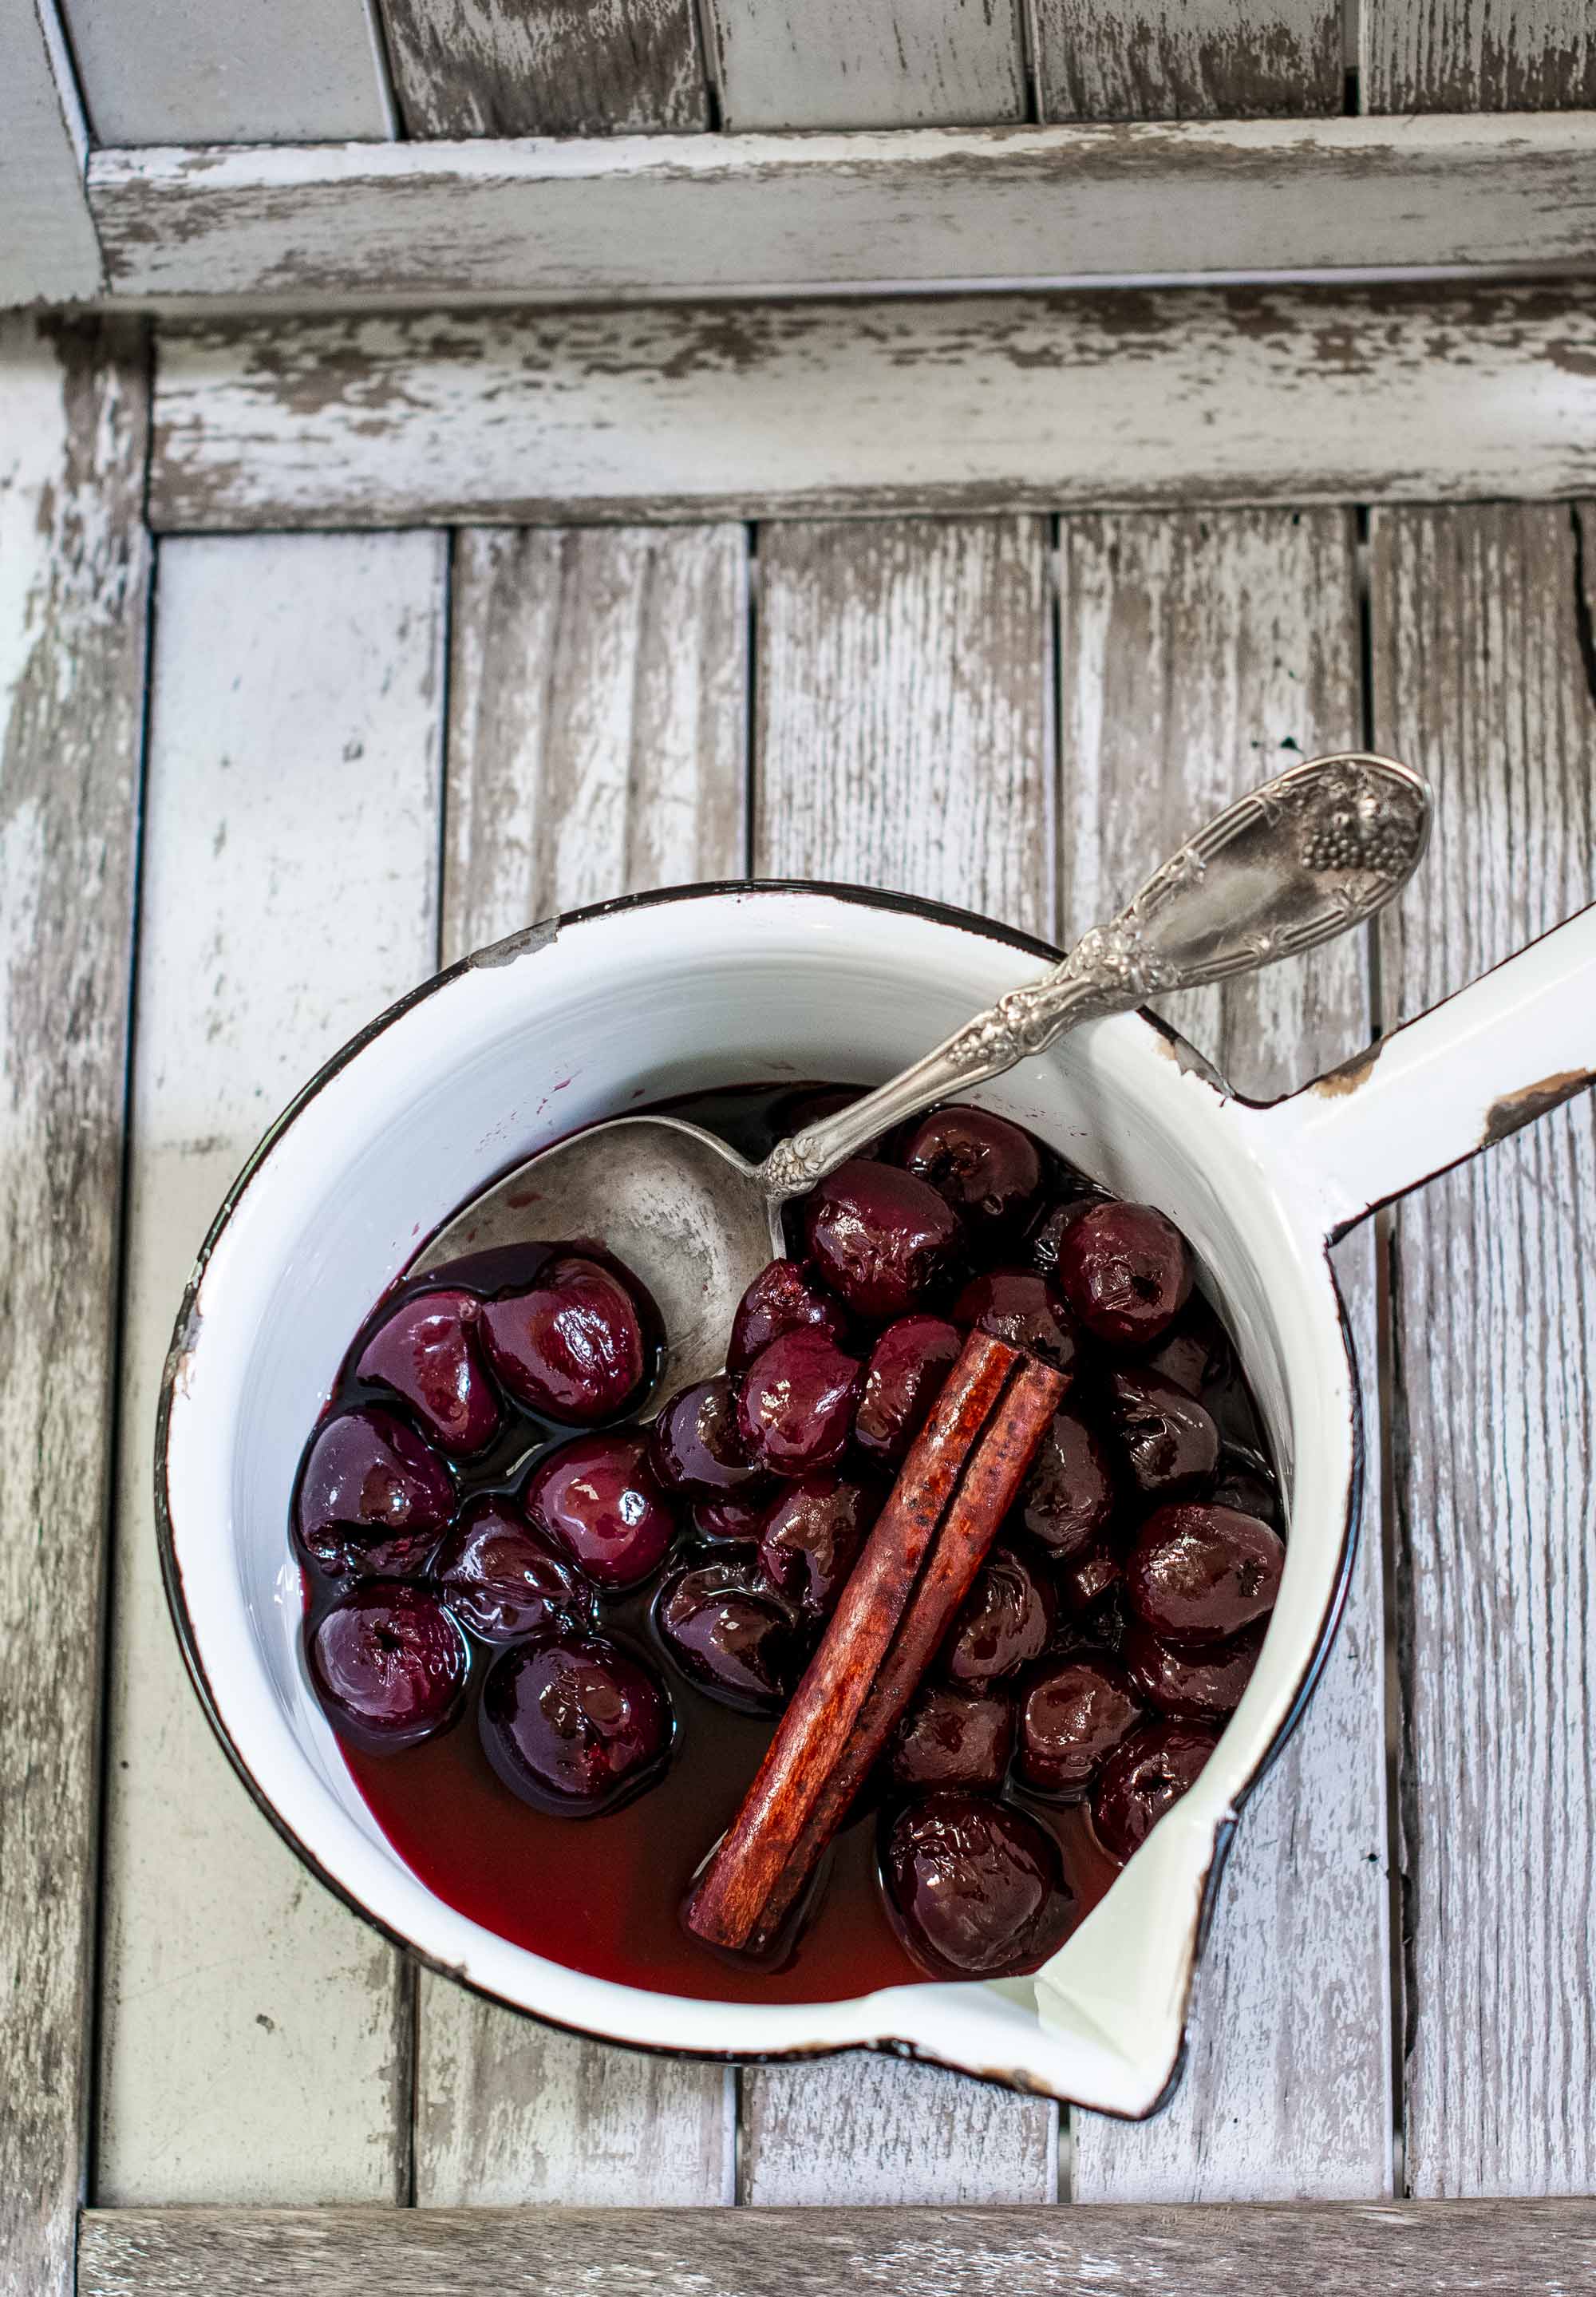 Maraschino Cherries with cinnamon stick in pot.